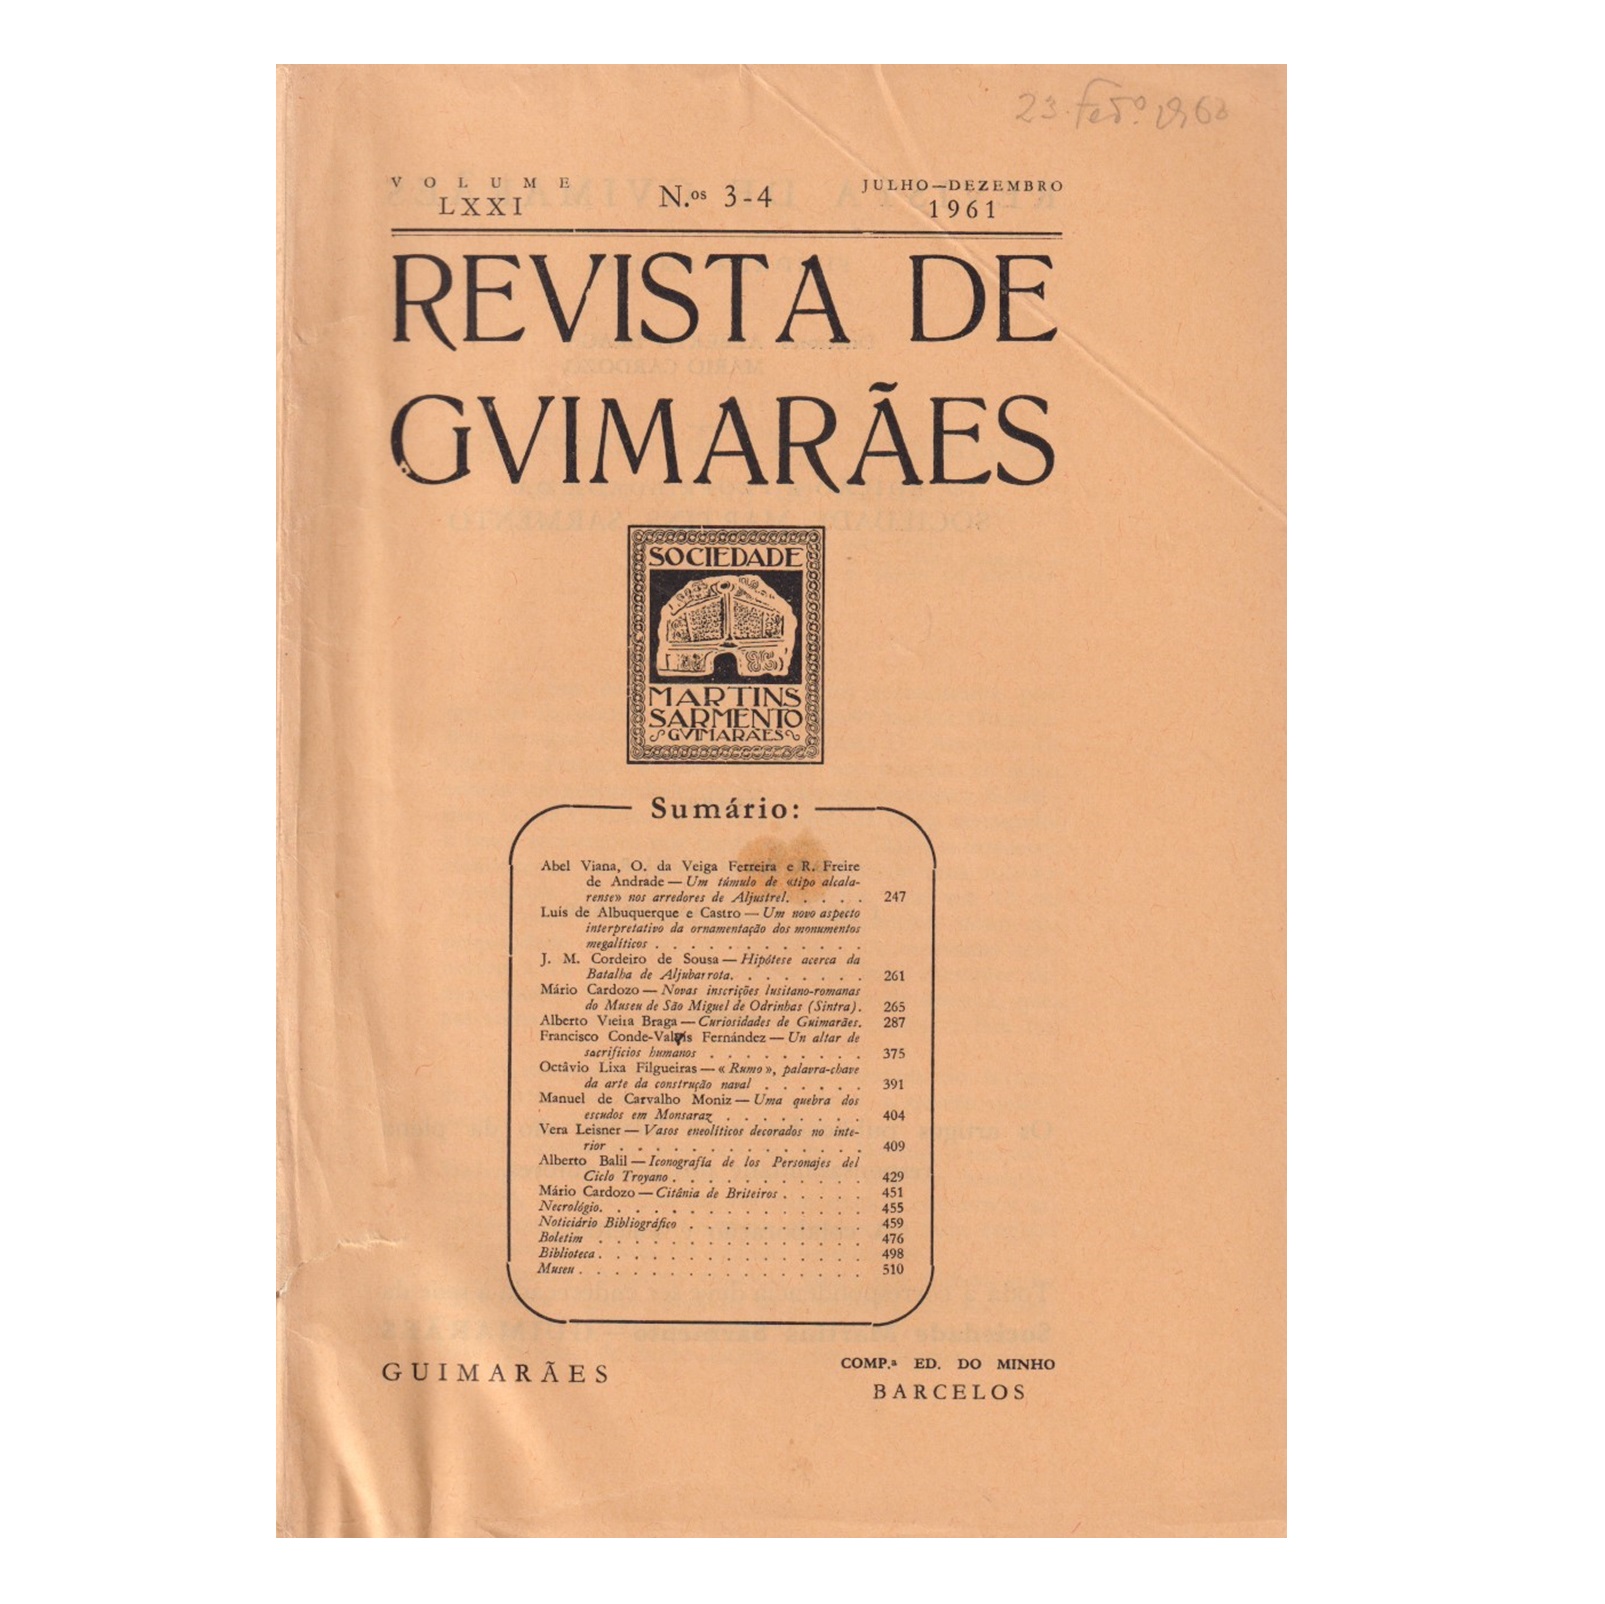 REVISTA DE GUIMARÃES. VOL. LXXI. N.º 3-4, 1961